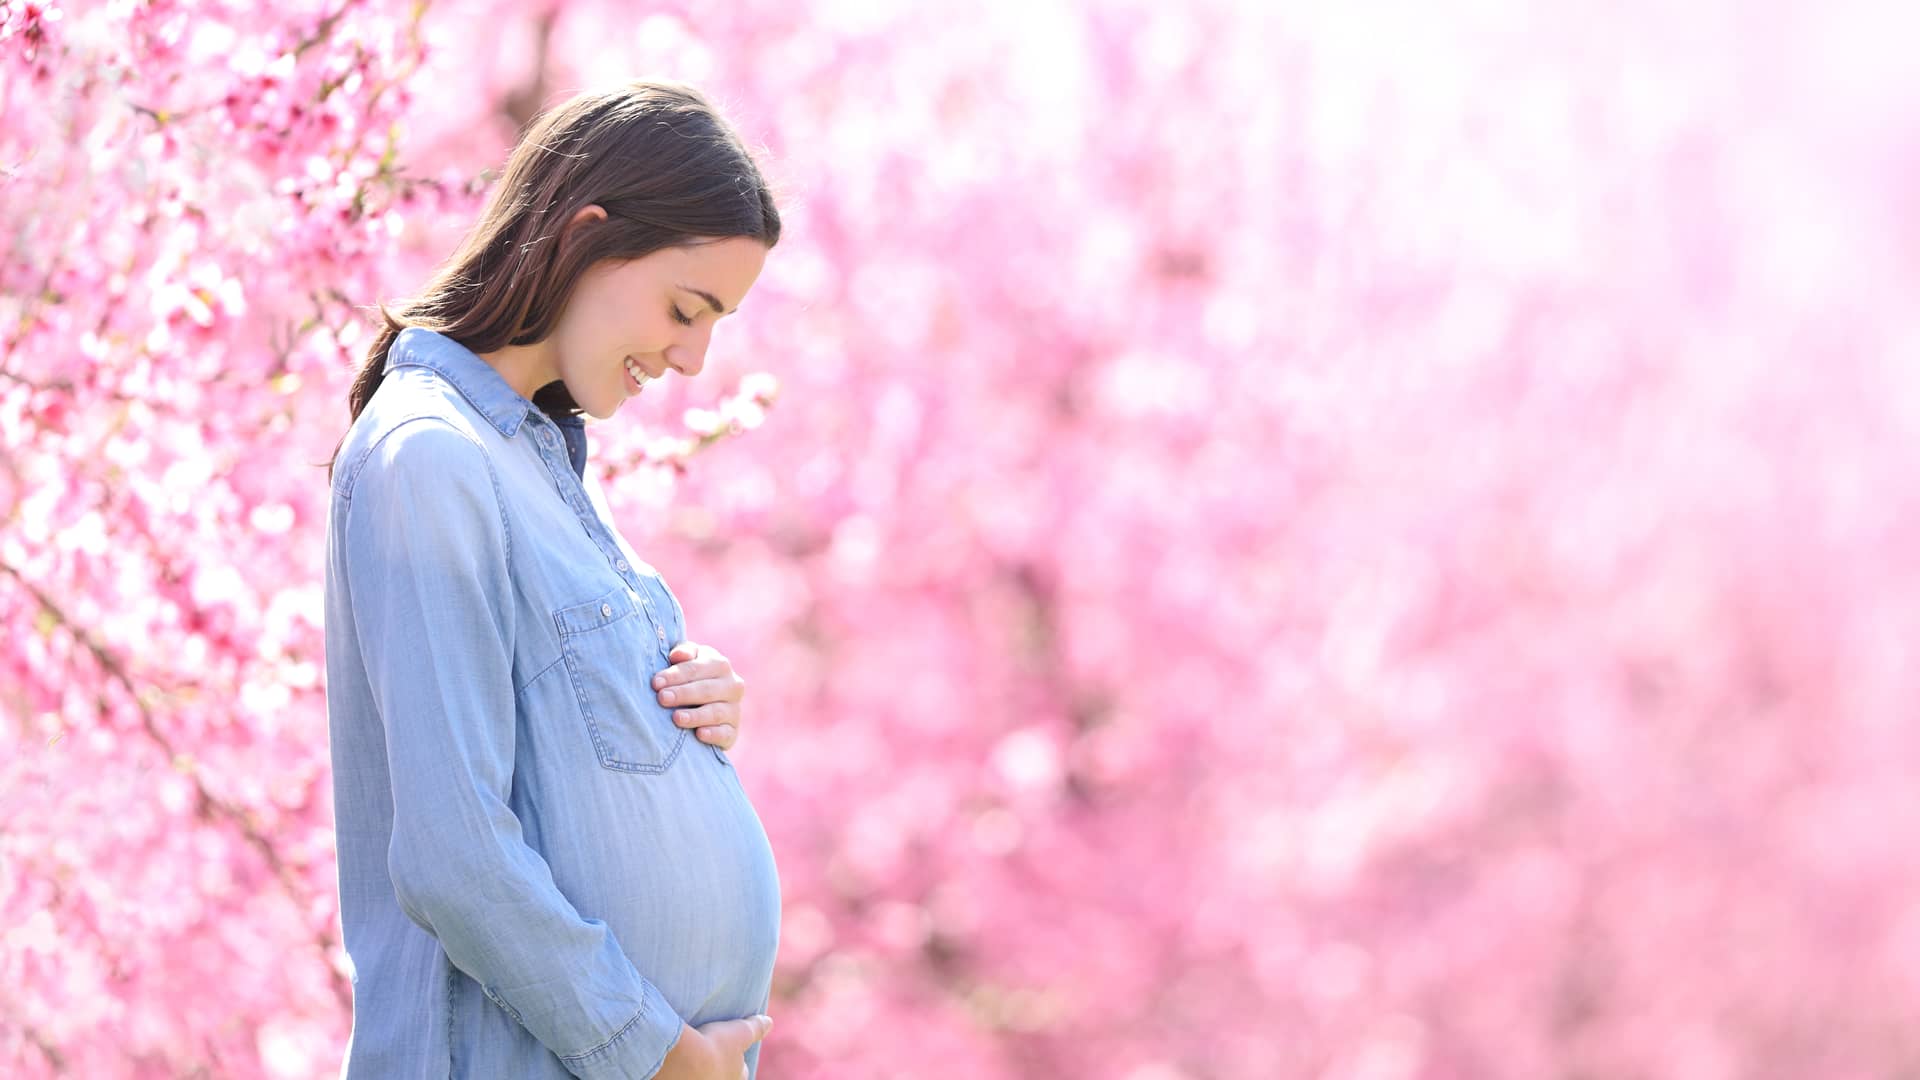 Mujer feliz a la cual su seguro de salud ha ayudado ha quedarse embarazada gracias a la reproducción asistida